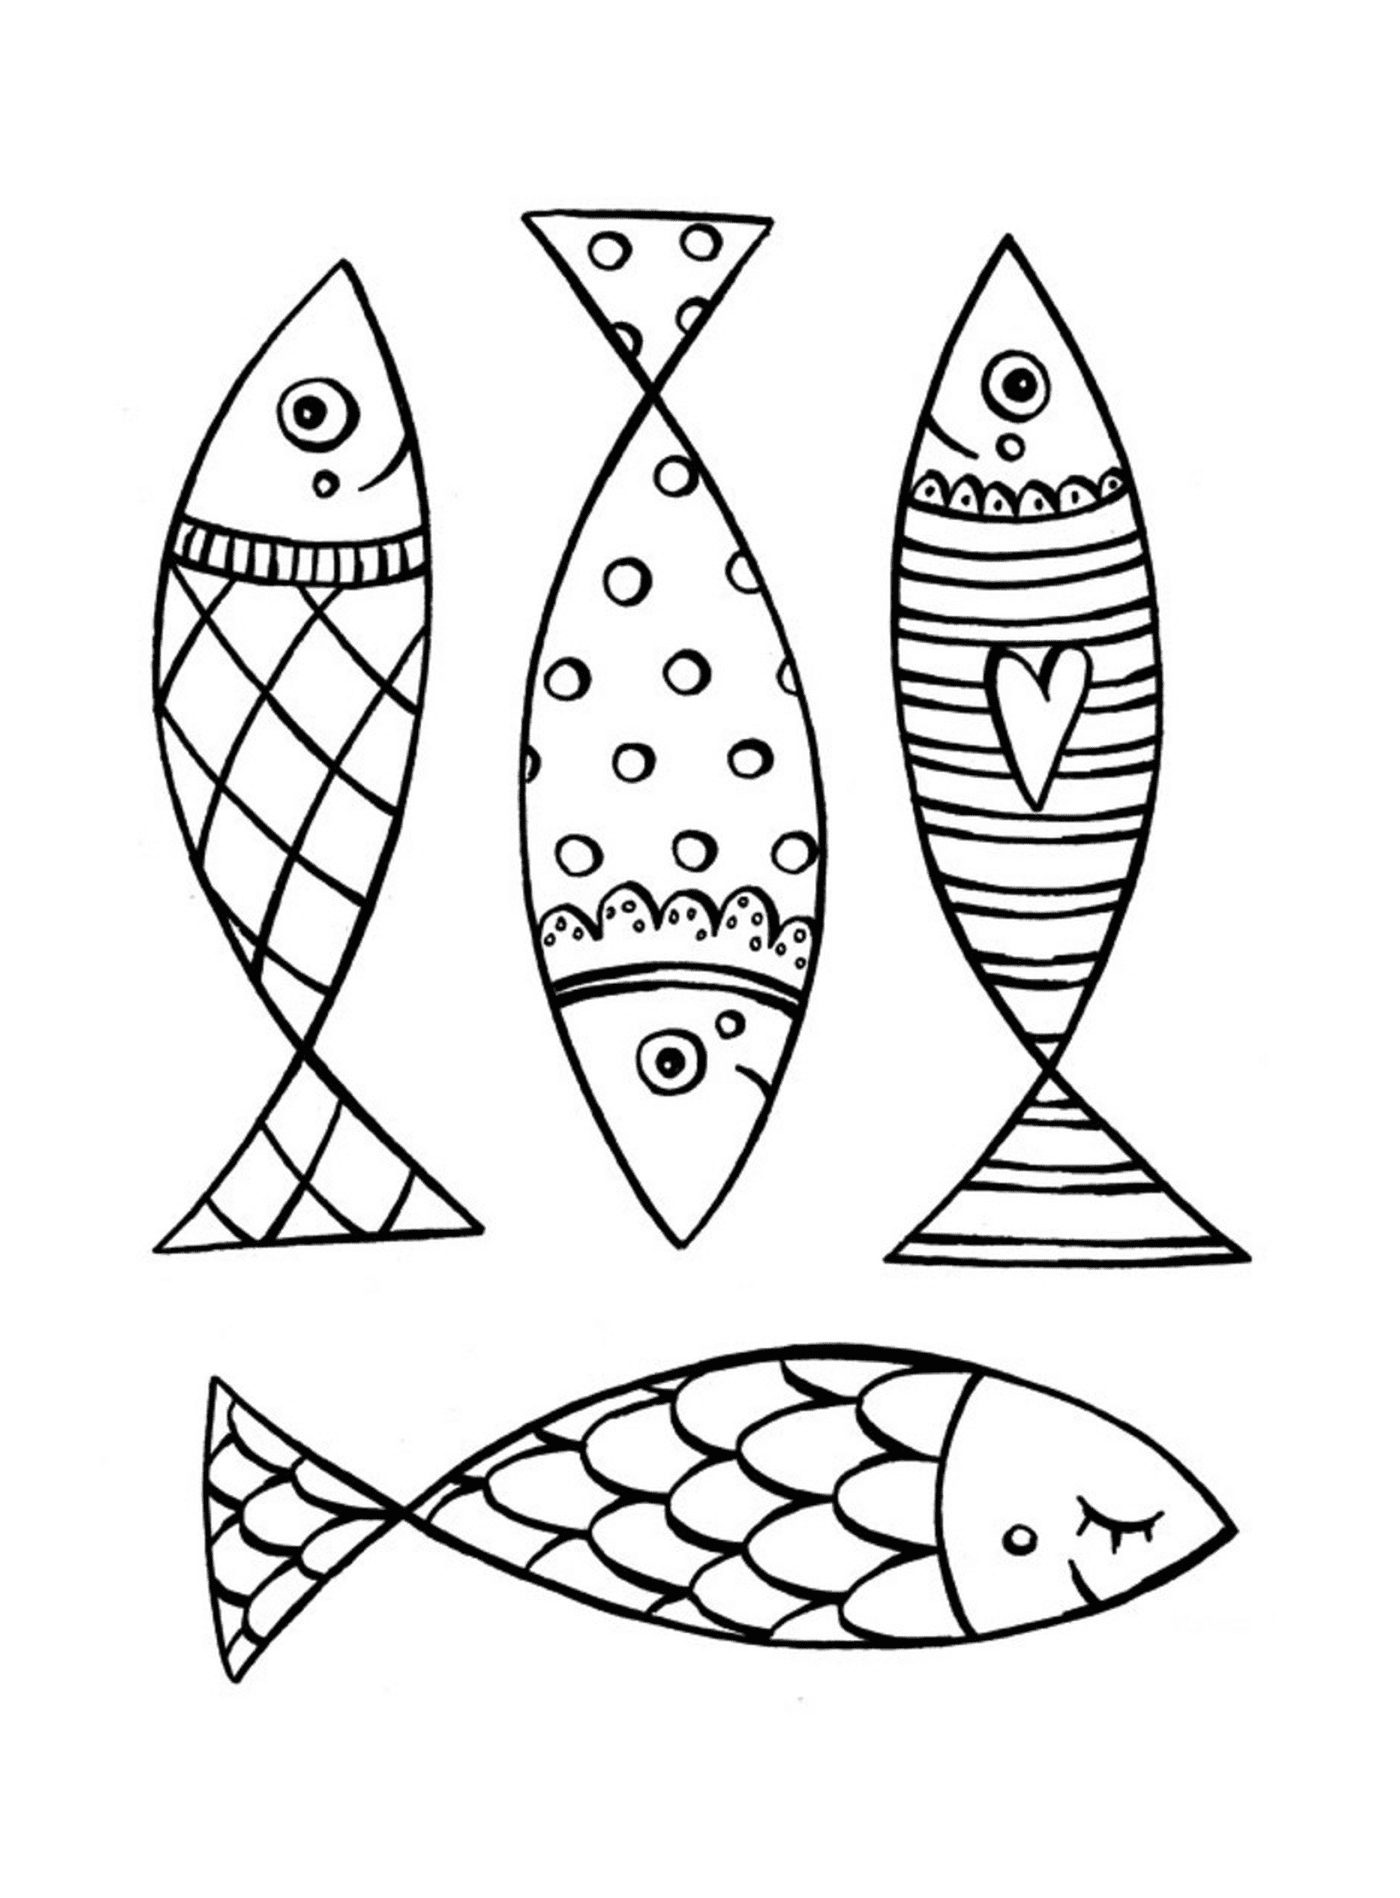  Grandes peces de abril con patrones únicos 